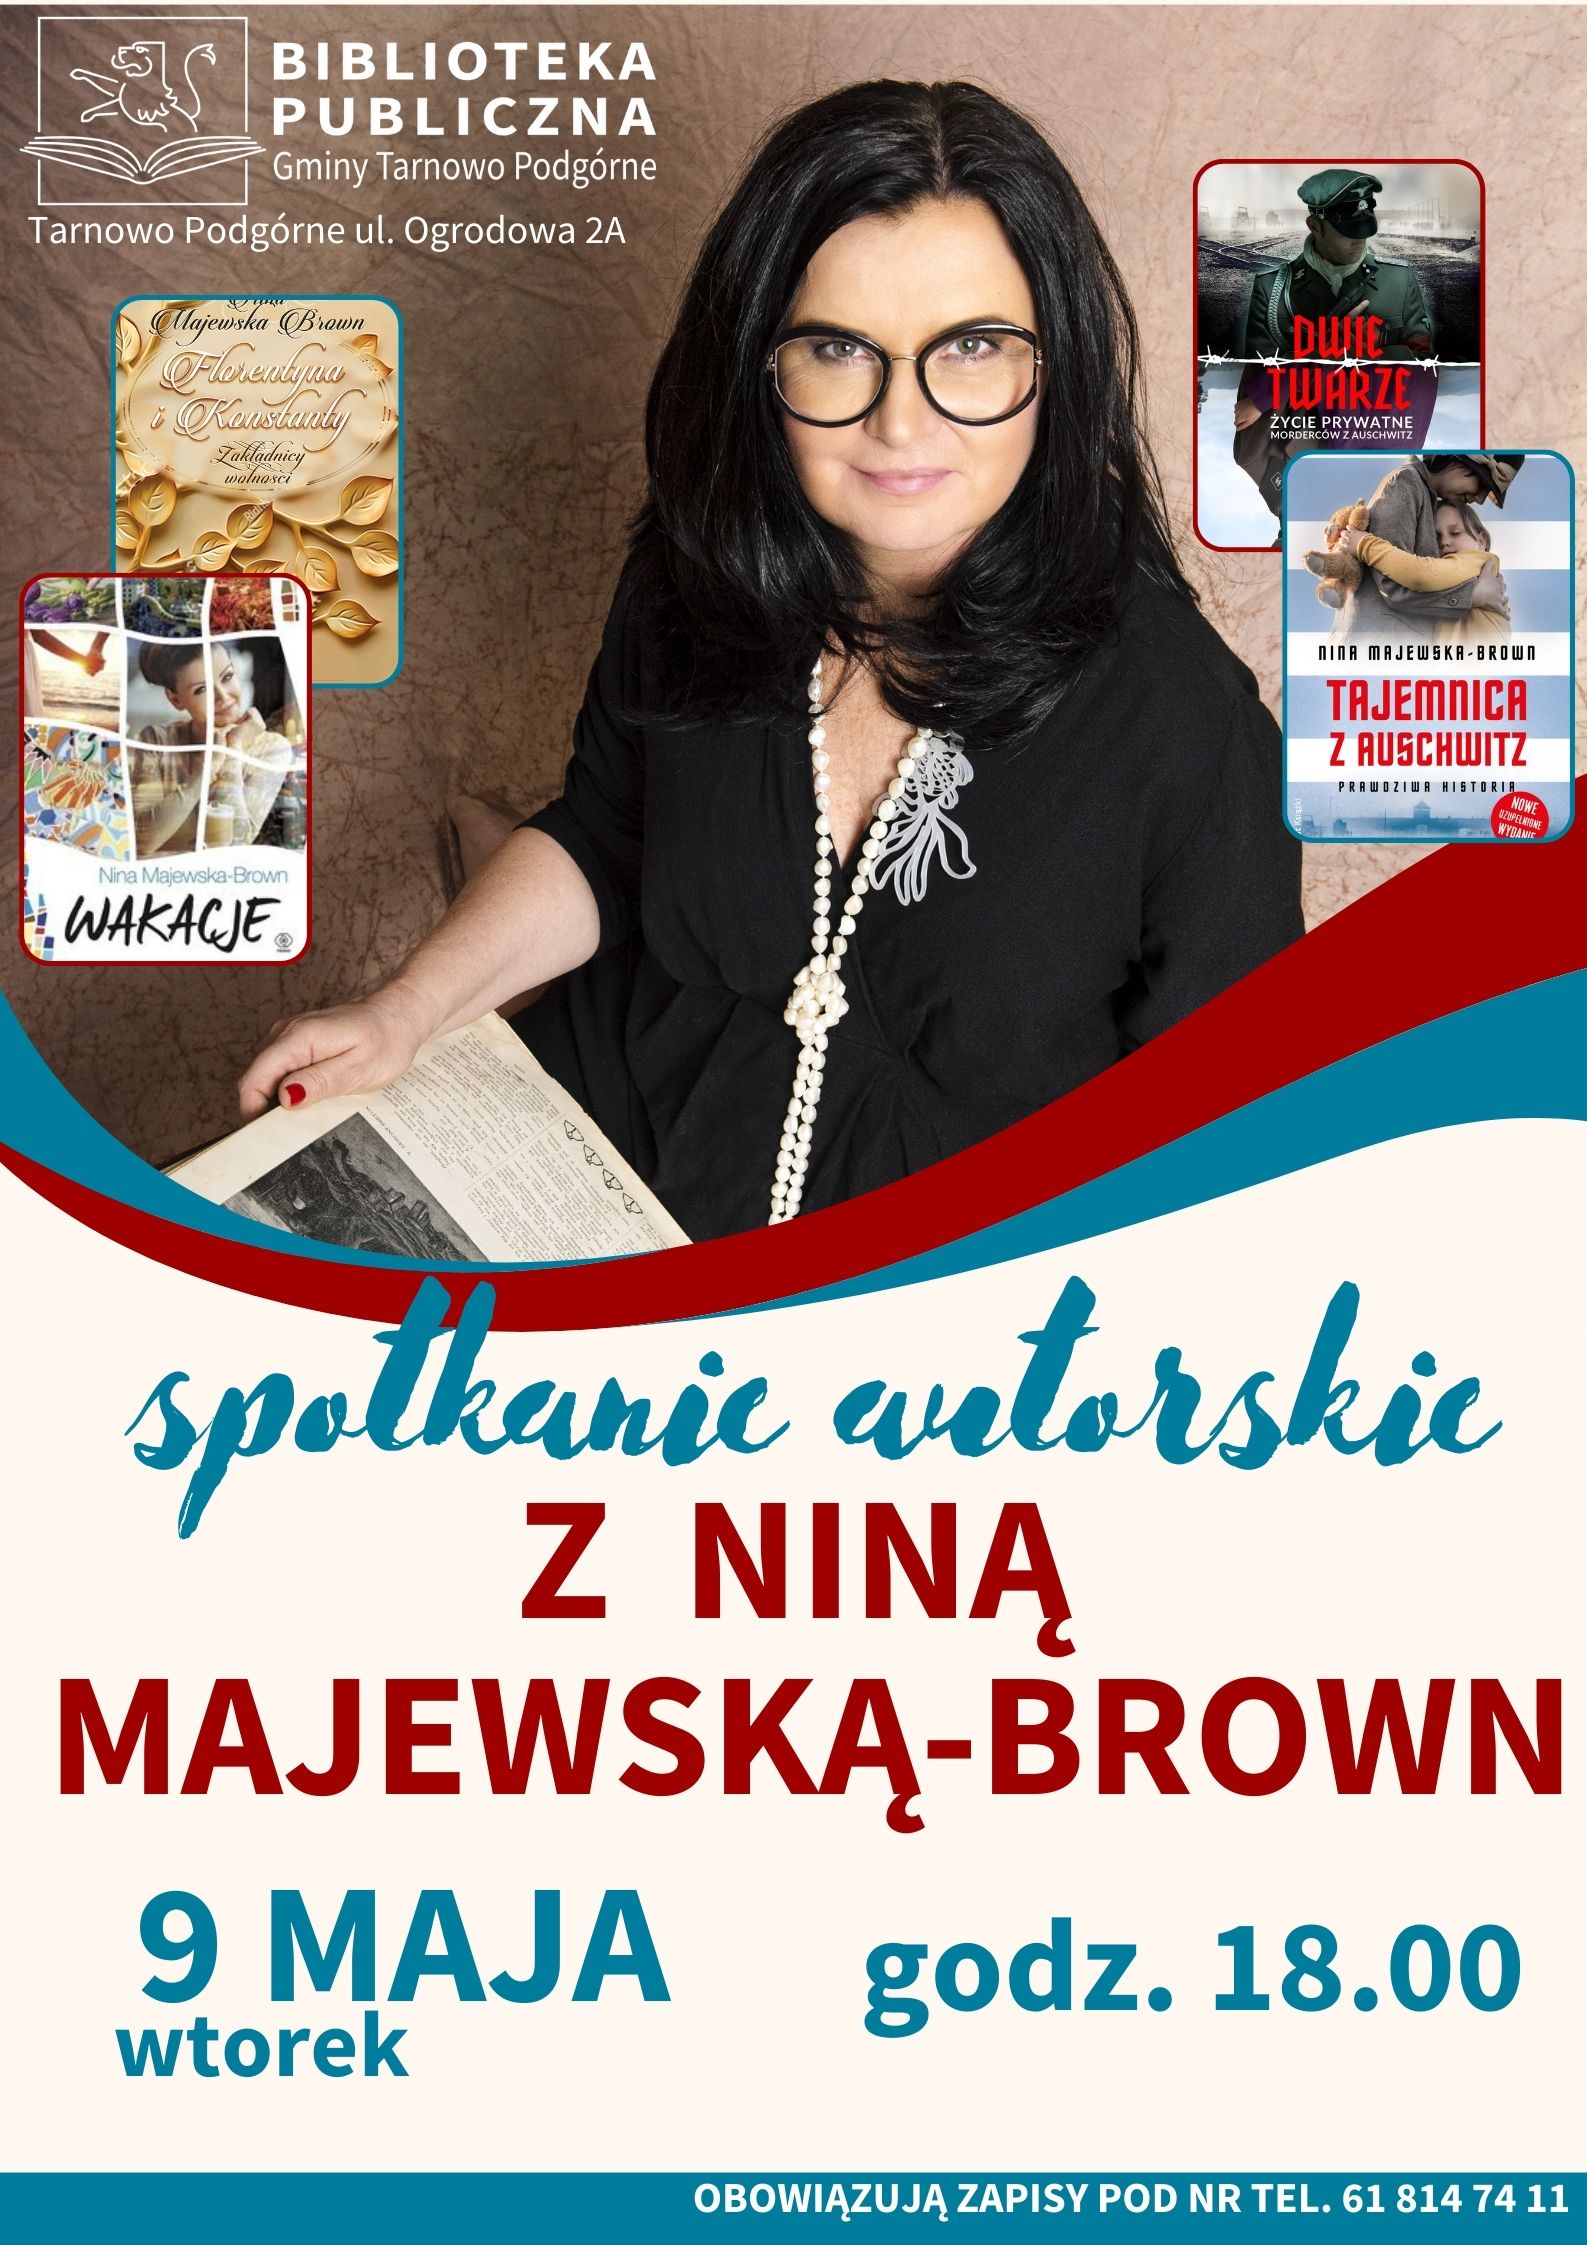 9 maja odbędzie się spotkanie z Niną Majewską – Brown, autorką znaną wszystkim naszym Czytelnikom z hitowych powieści obyczajowych, takich jak: „Nina”, „Wakacje”, „Mąż na niby”, „Żona na zamówienie”, a także bardzo dobrze przyjętego kryminału „Grzech”.

Pani Nina jest pisarką znaną ze swojej wrażliwości, co sprawia, że jej kolejne powieści podbijają listy bestsellerów i zyskują grono wielbicieli. Efektem jej zainteresowania historią są m.in. powieści „Tajemnica z Auschwitz”, „Anioł życia z Auschwitz”, czy „Ocalona z Auschwitz”.

Spotkanie odbędzie się w Bibliotece Publicznej w Tarnowie Podgórnym, 9 maja o godzinie 18:00

